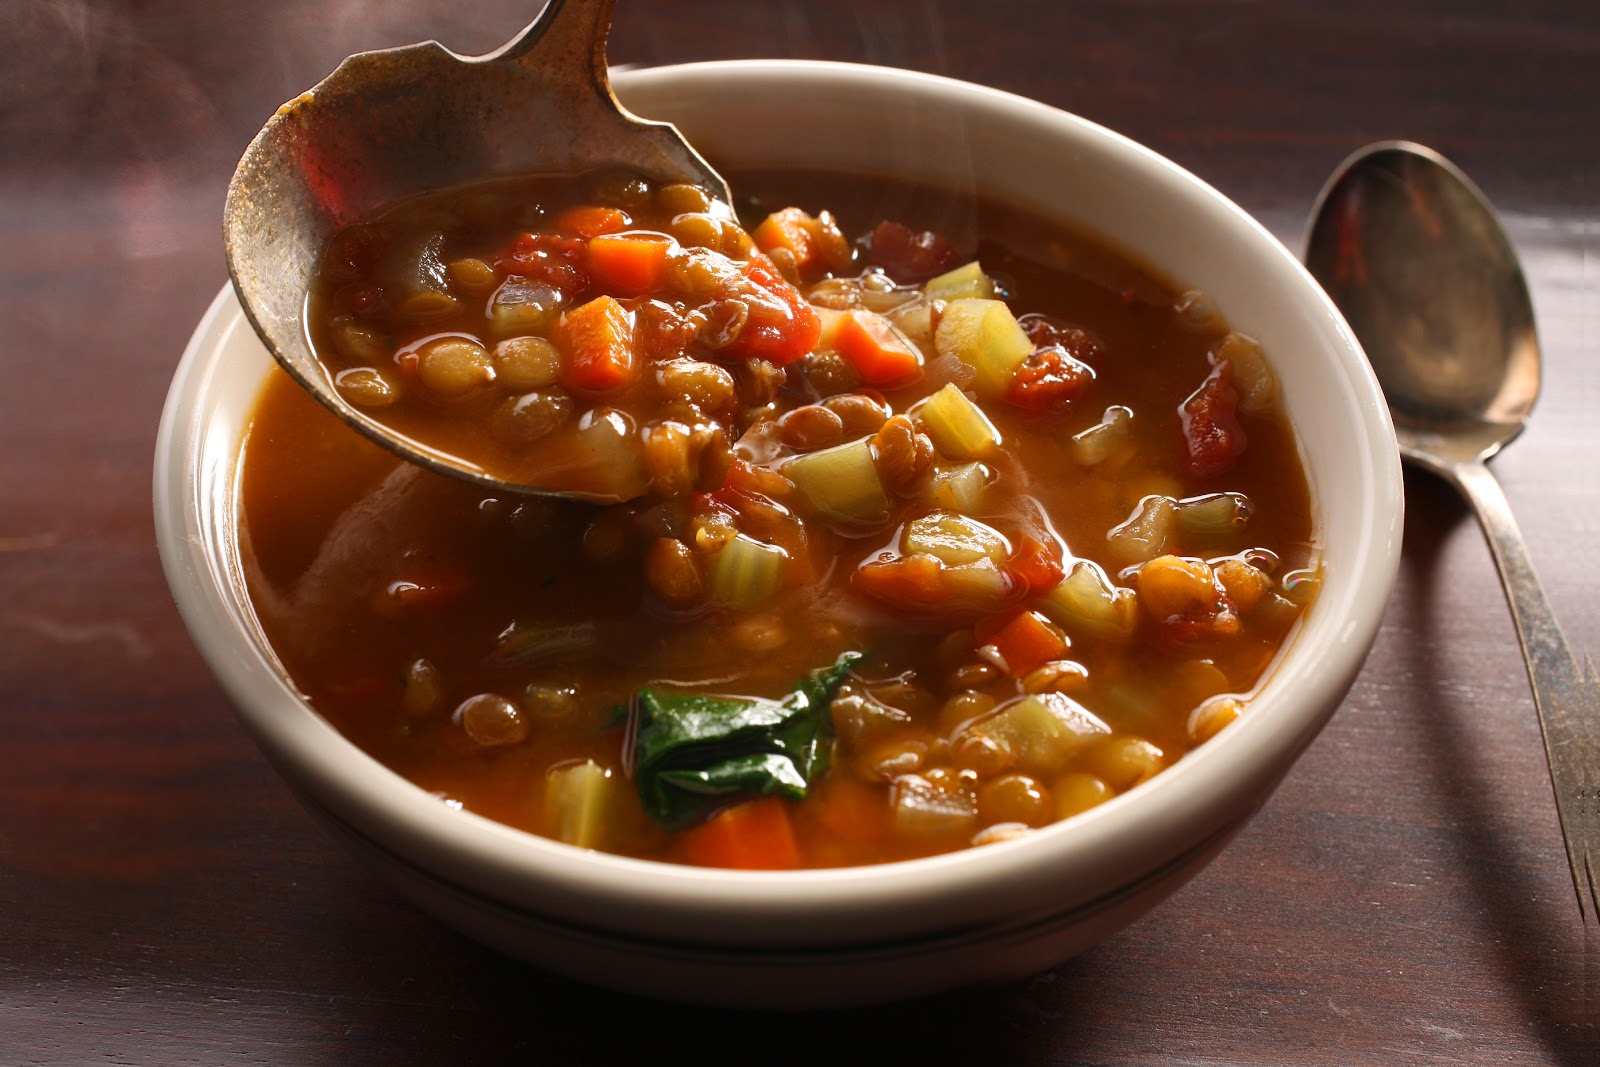 Hot lentil soup